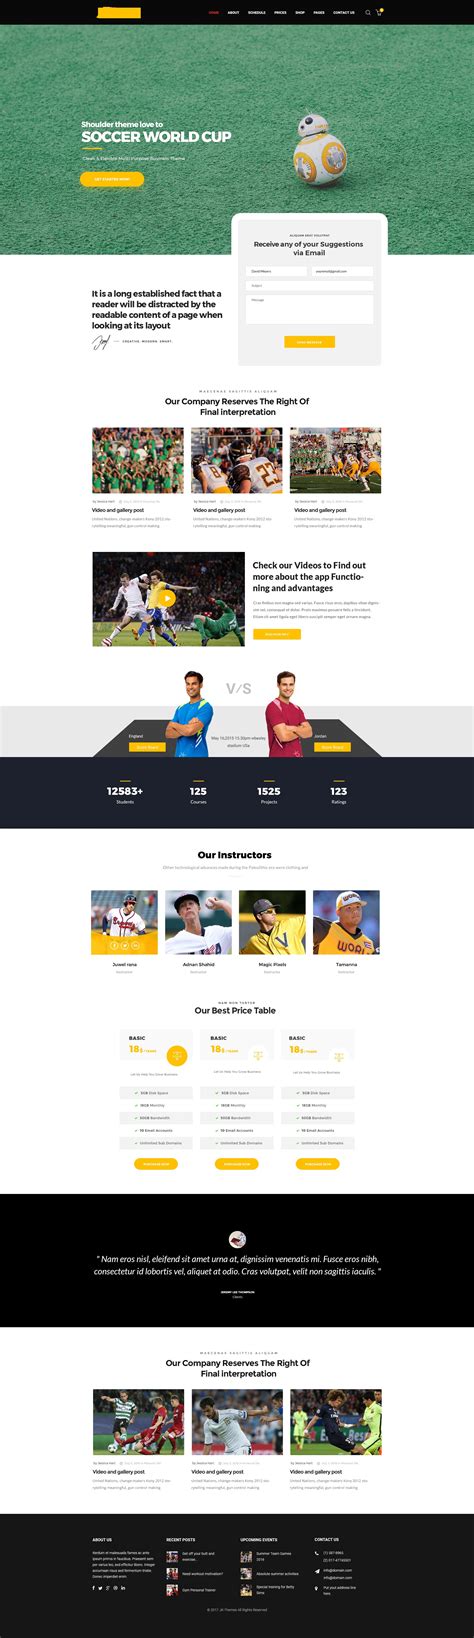 世界杯来了，这十款网页教你如何设计足球类专题页 - 优优教程网 - 自学就上优优网 - UiiiUiii.com